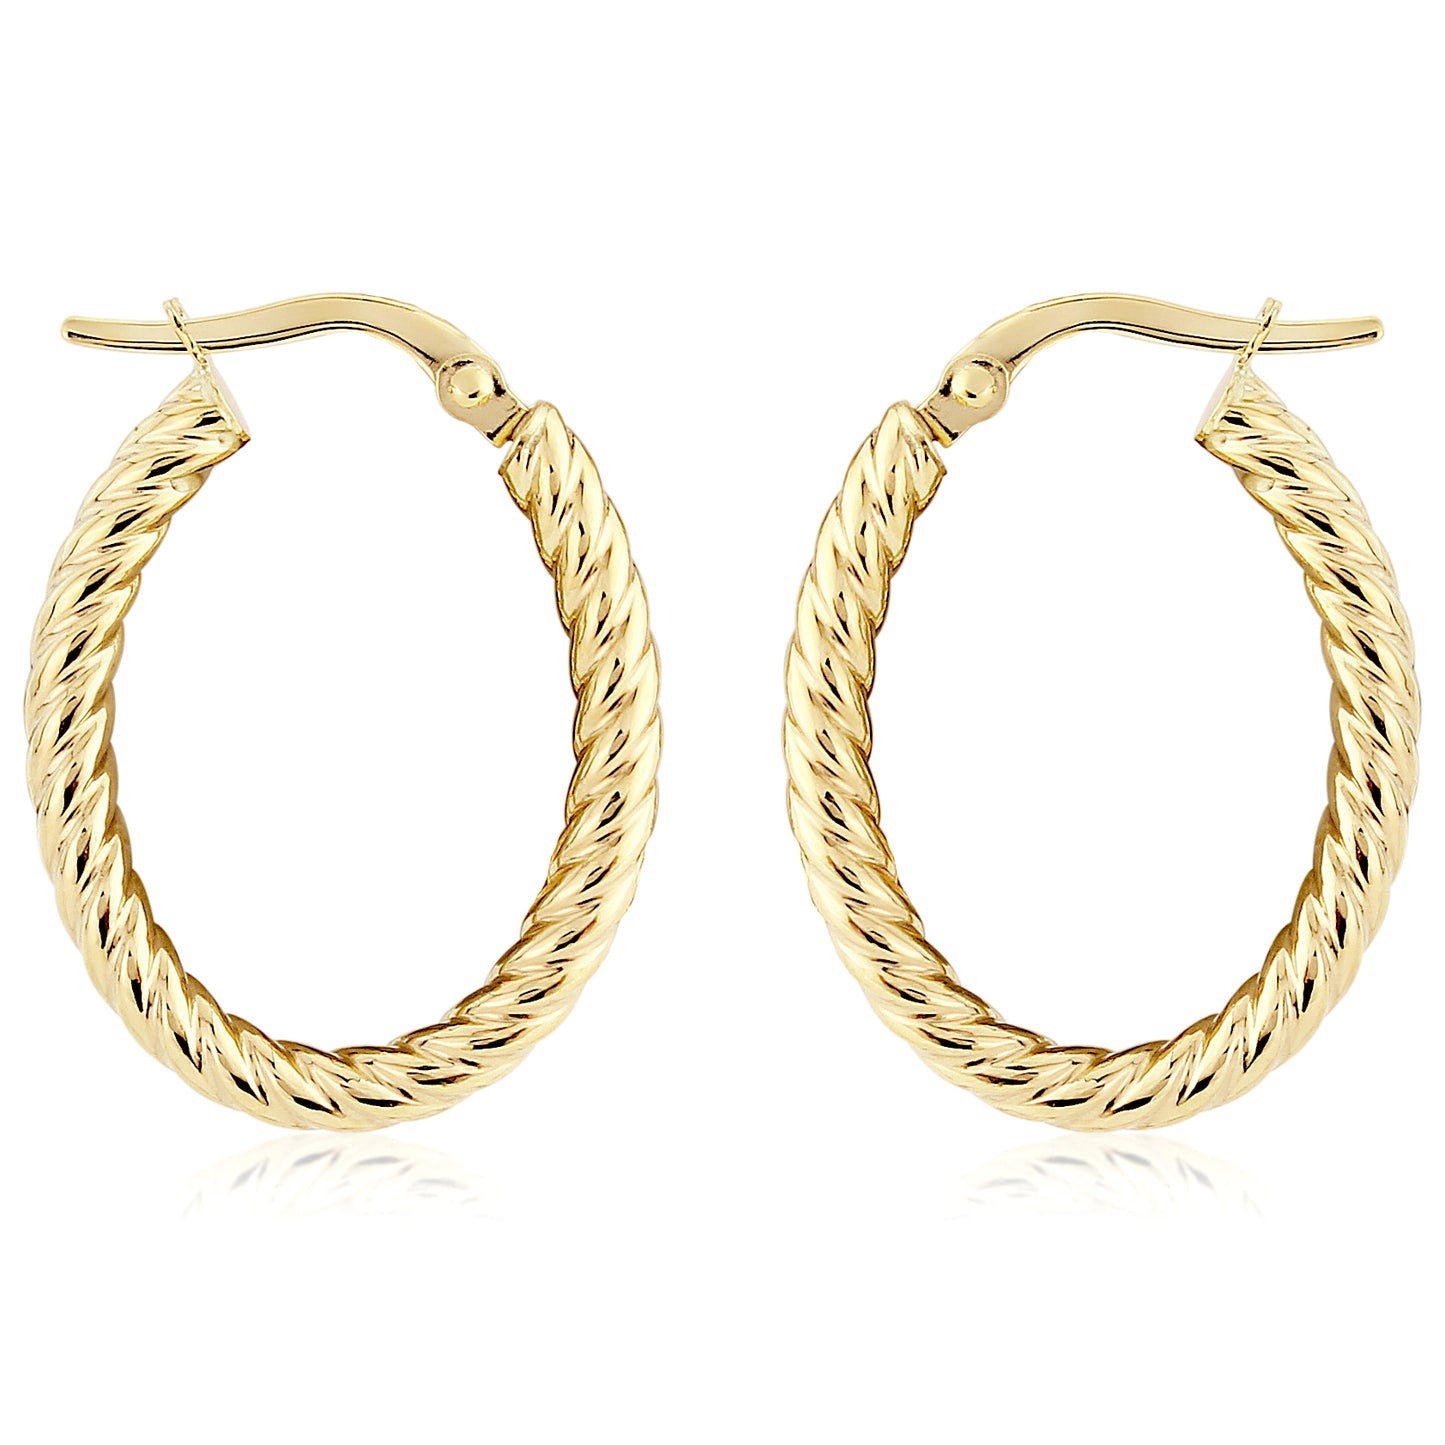 Ladies 9ct Gold  Oval Twist Rope Hoop Earrings - 15x20mm - ERNR02846